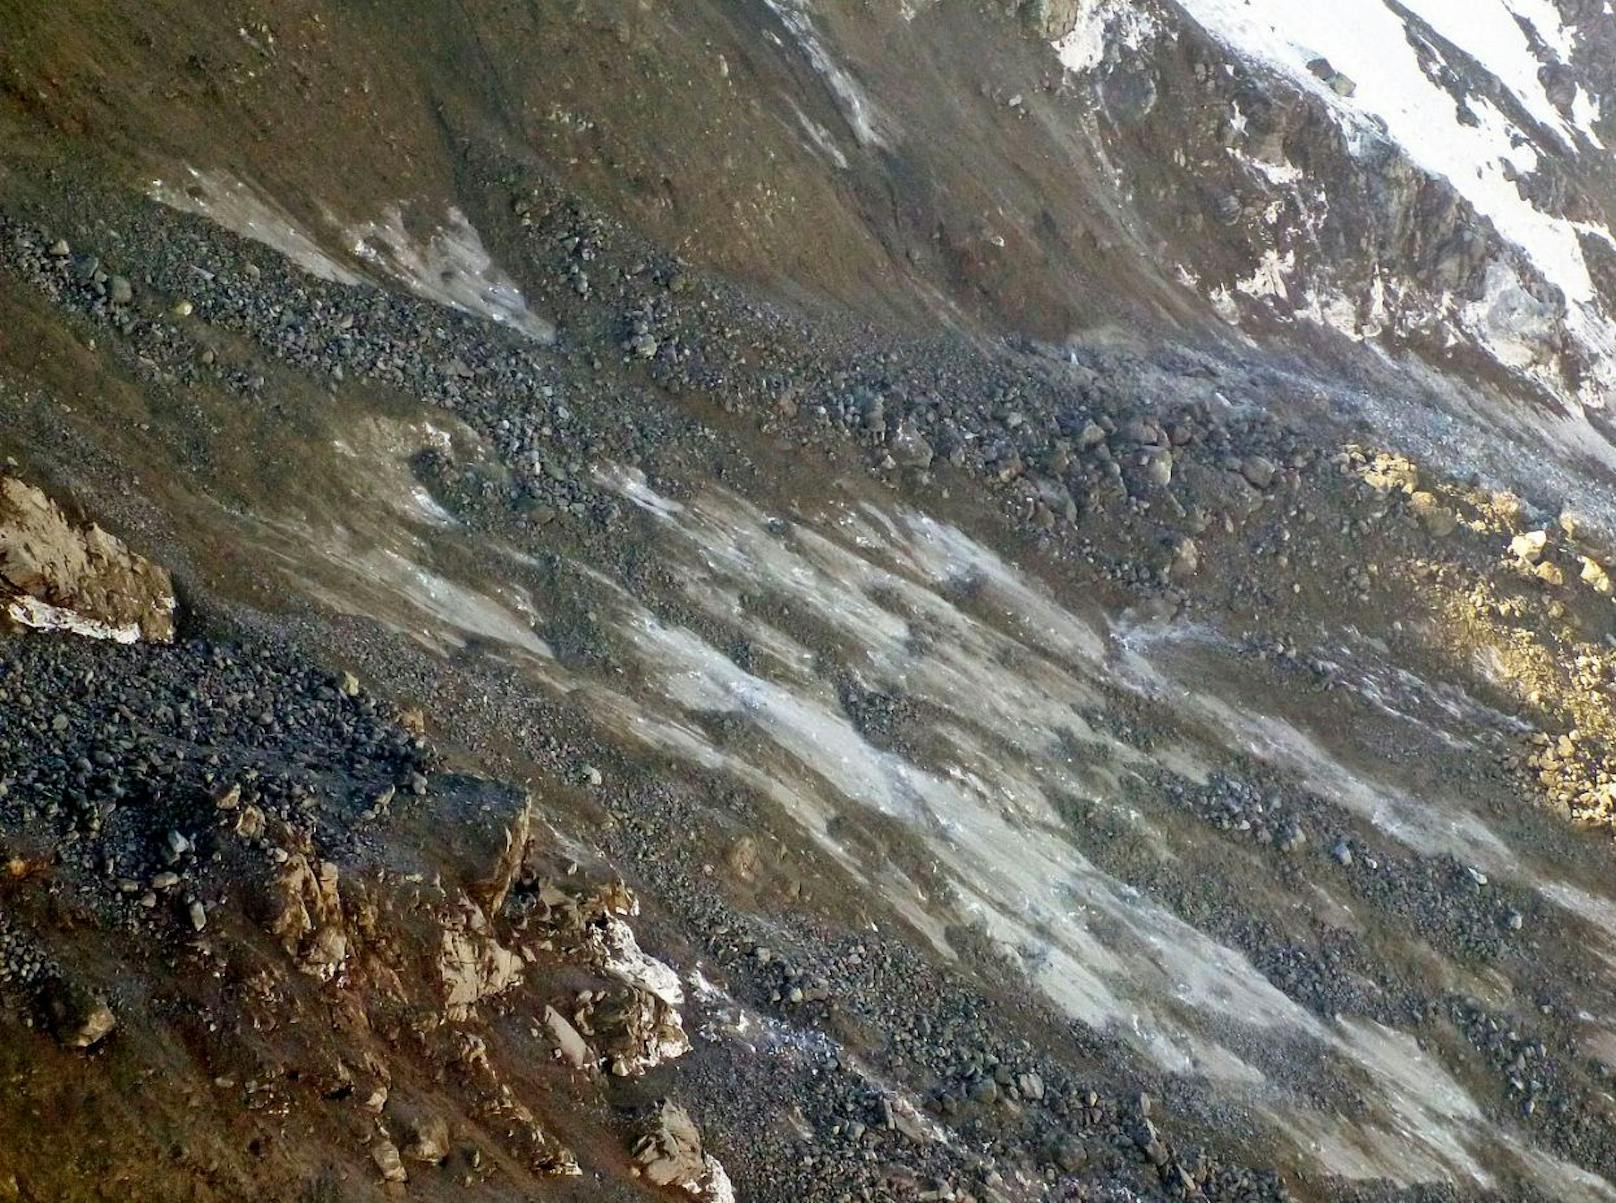 Im Abbruchbereich wurden Eisflächen freigelegt. Die Landesgeologie sieht darin ein Indiz, dass auftauender Permafrost für den Gipfelsturz verantwortlich ist.